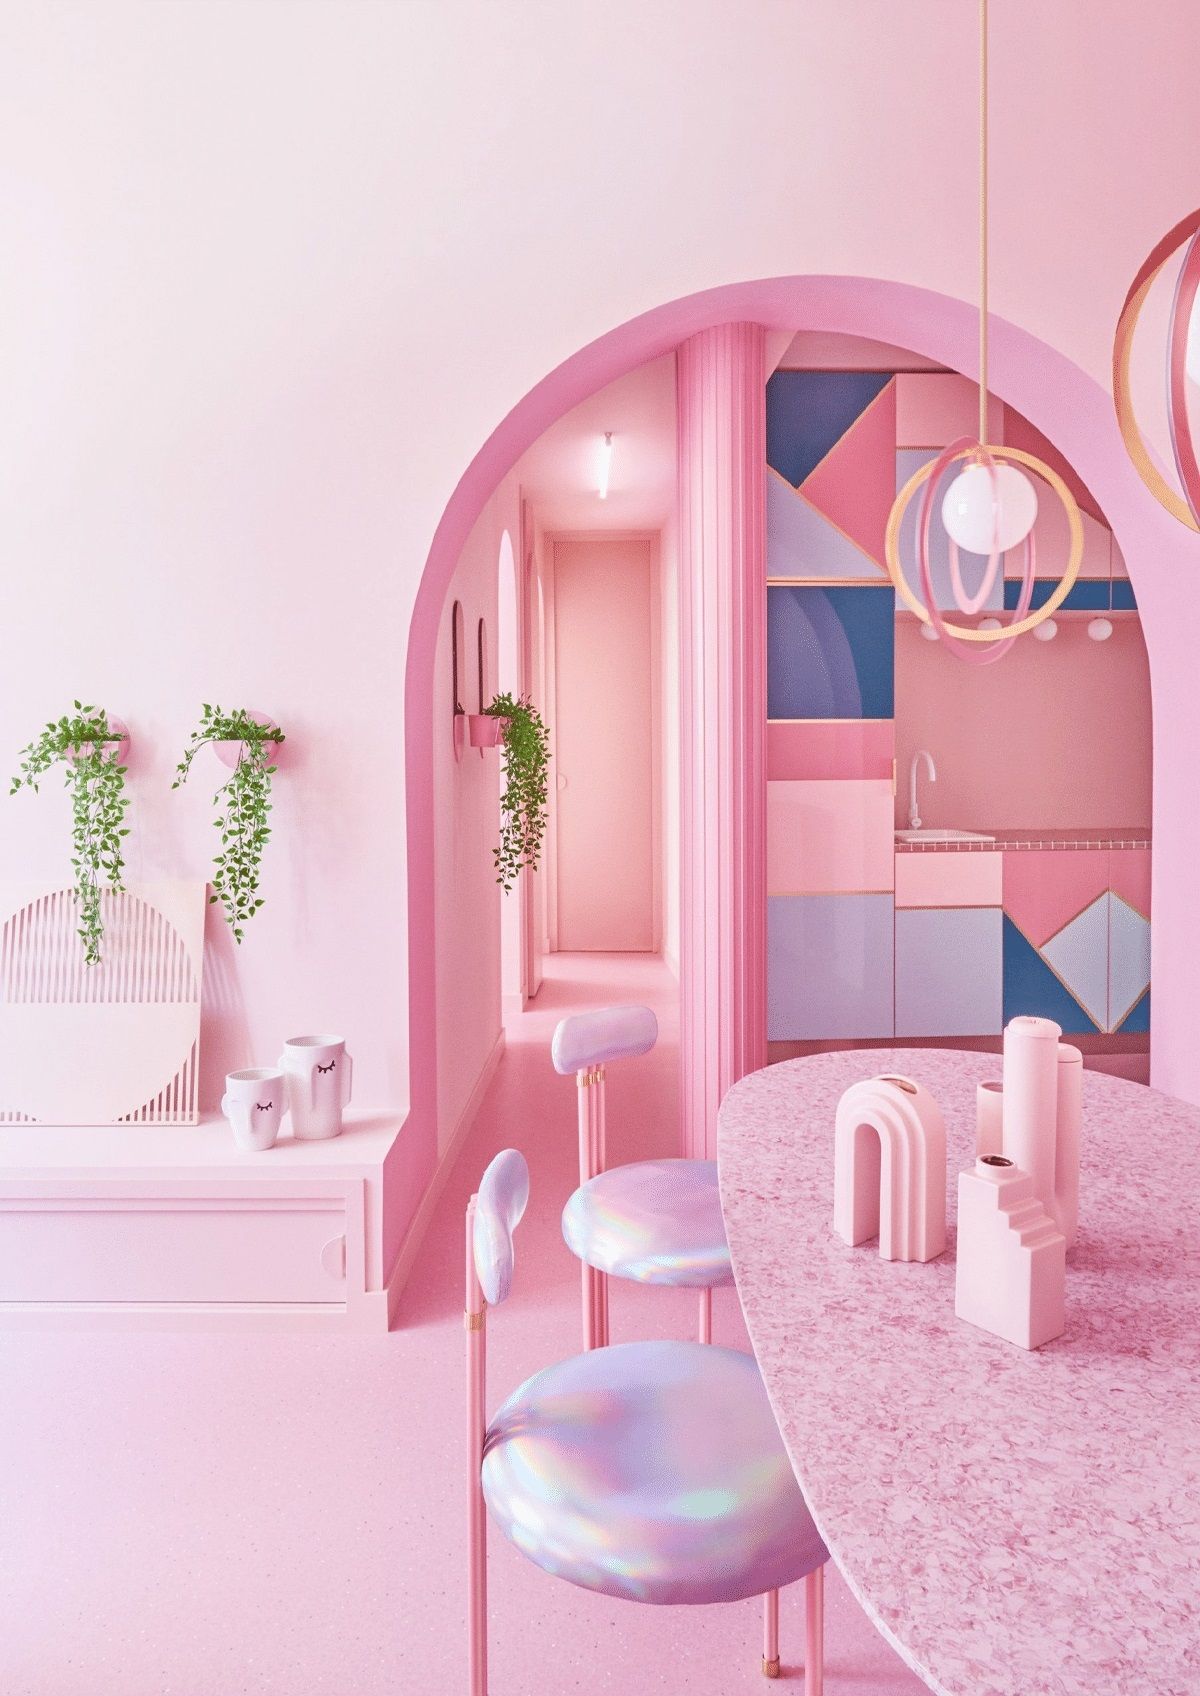 全粉红色公寓――泡泡糖梦想度假胜地